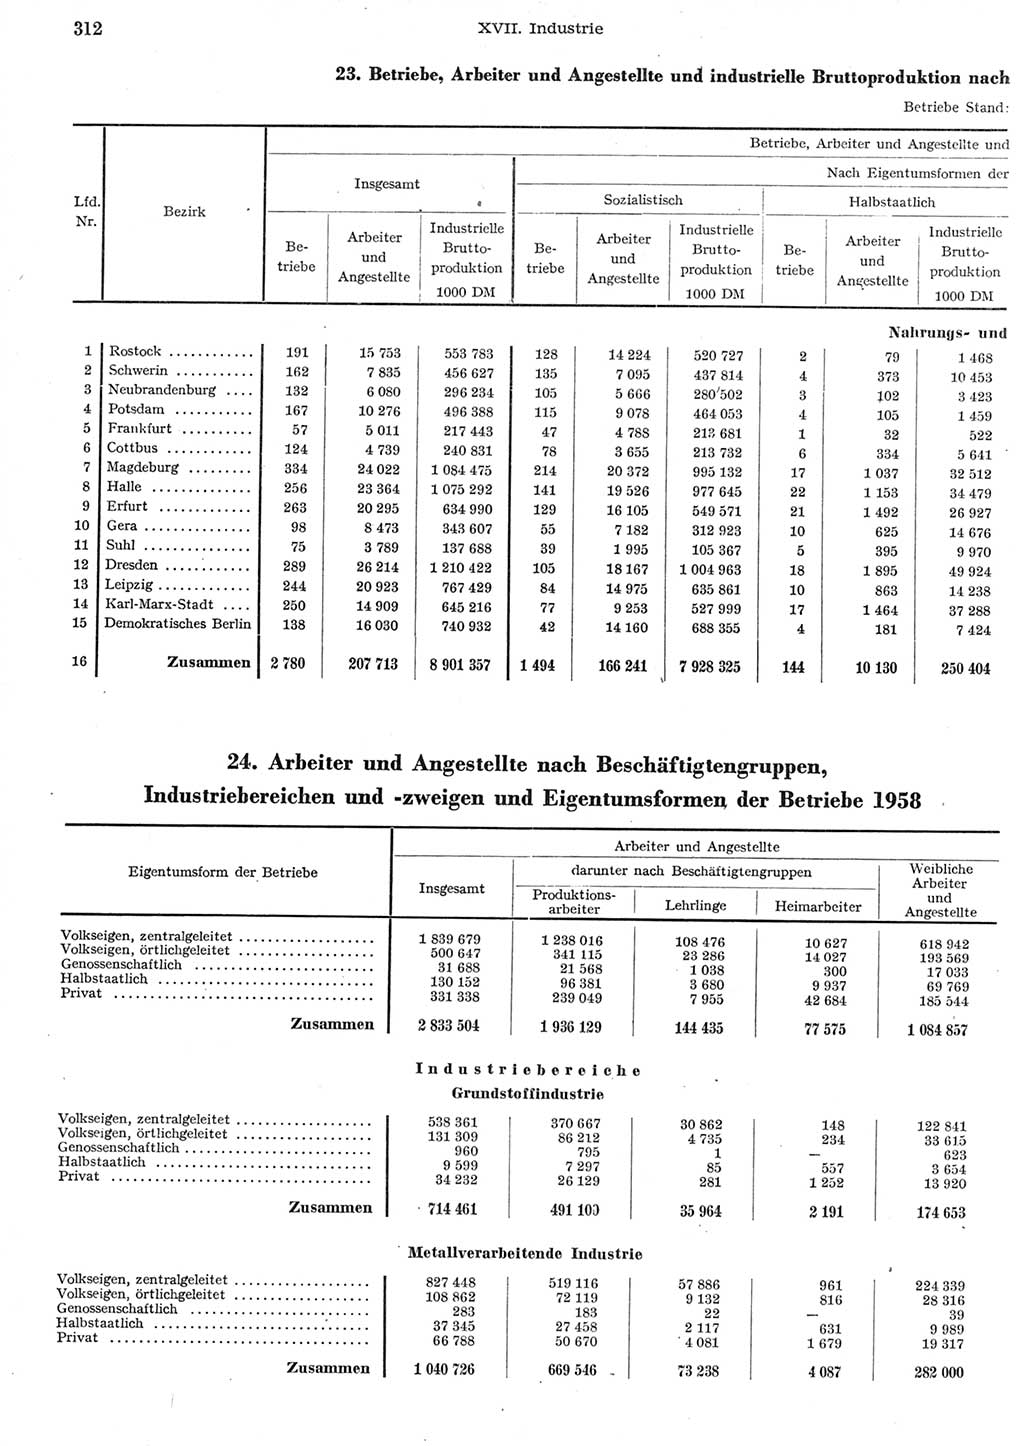 Statistisches Jahrbuch der Deutschen Demokratischen Republik (DDR) 1958, Seite 312 (Stat. Jb. DDR 1958, S. 312)